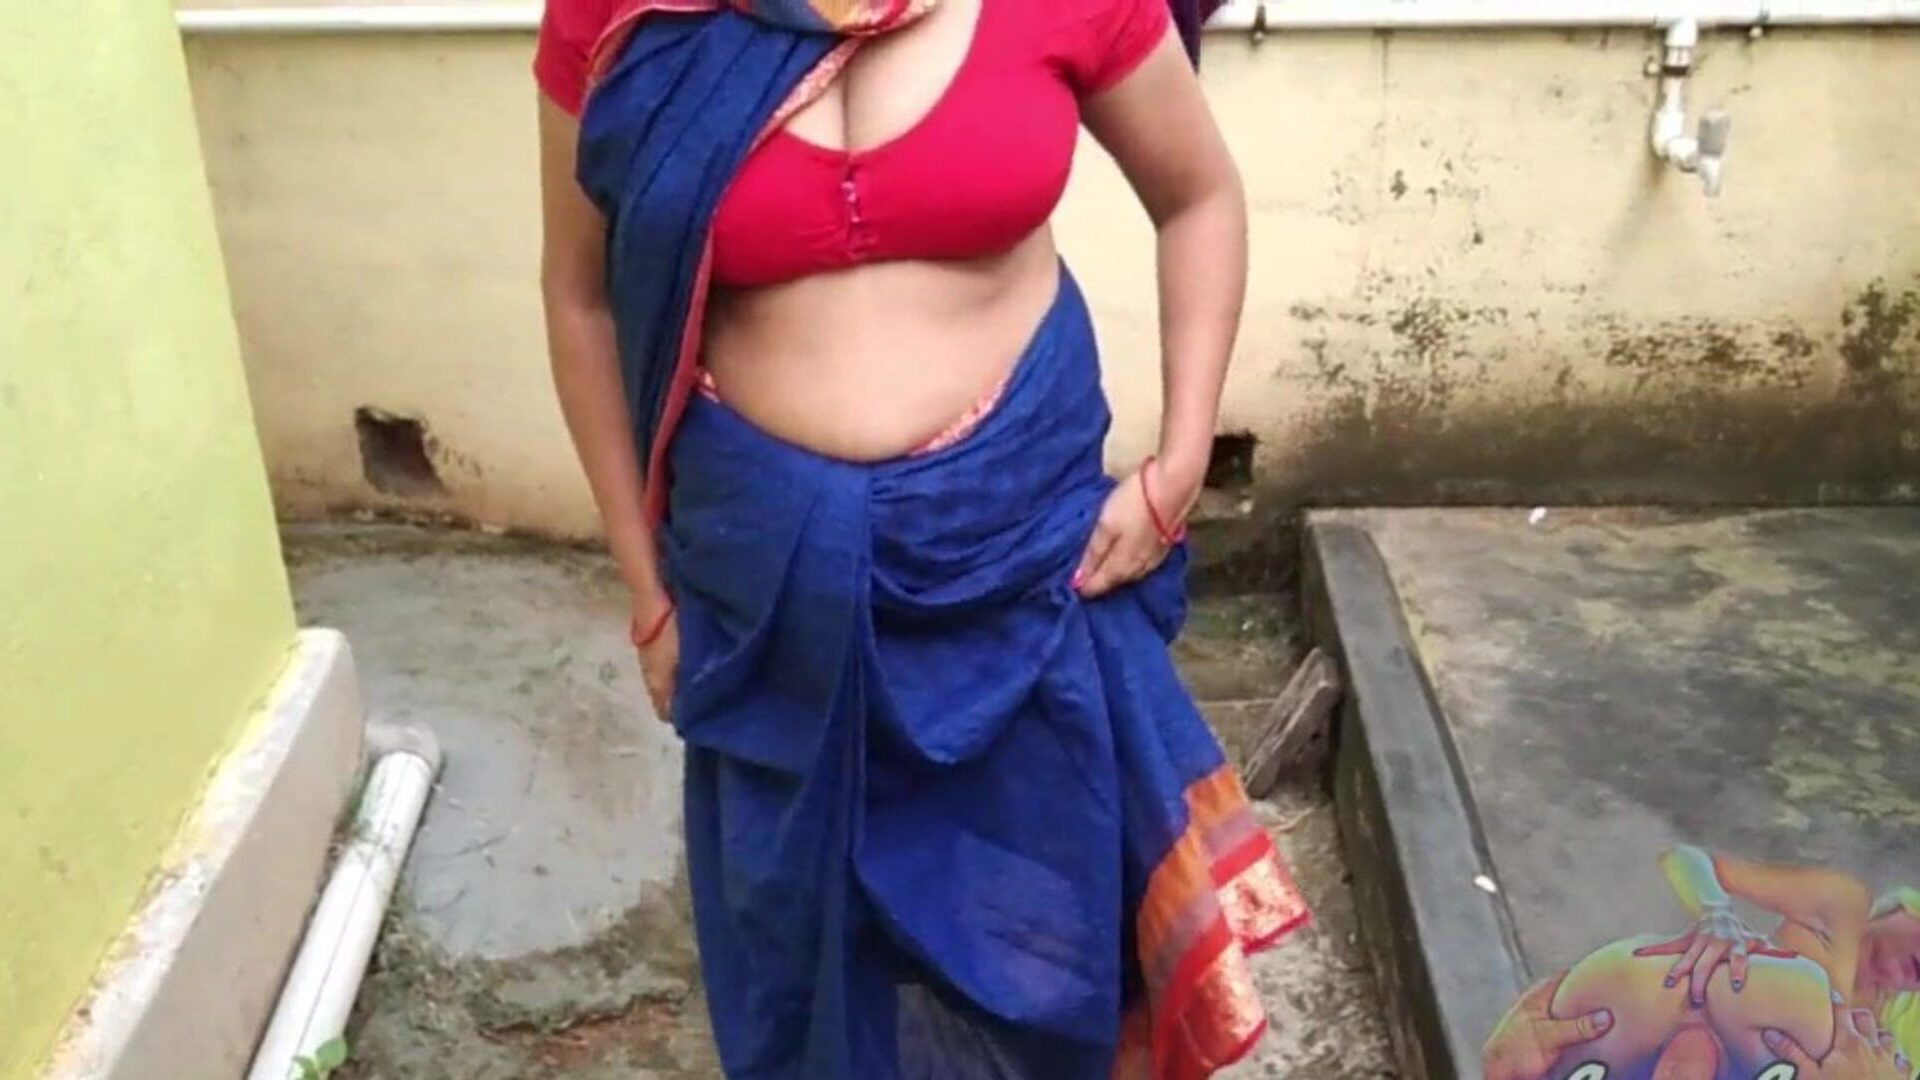 bhabhi en sari bleu pisse dans la cour montrant sa chatte menstruelle